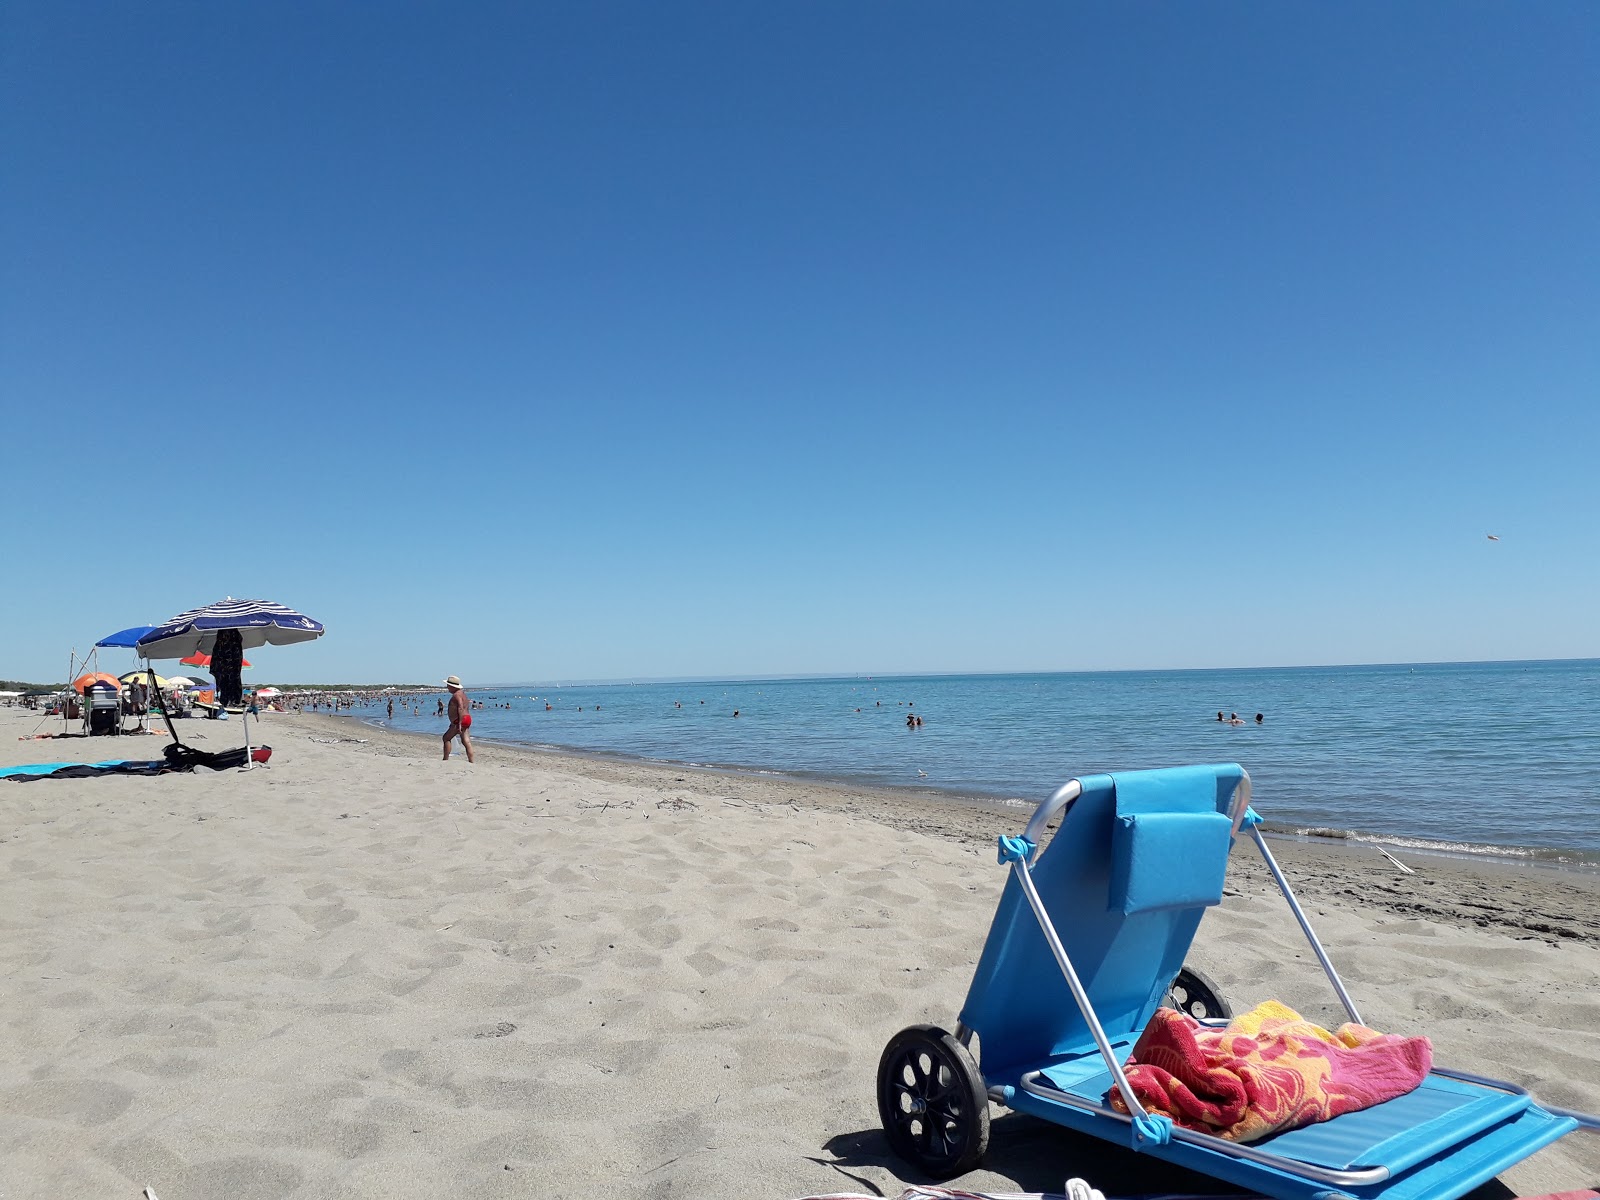 Foto von Lido di Scanzano beach mit langer gerader strand